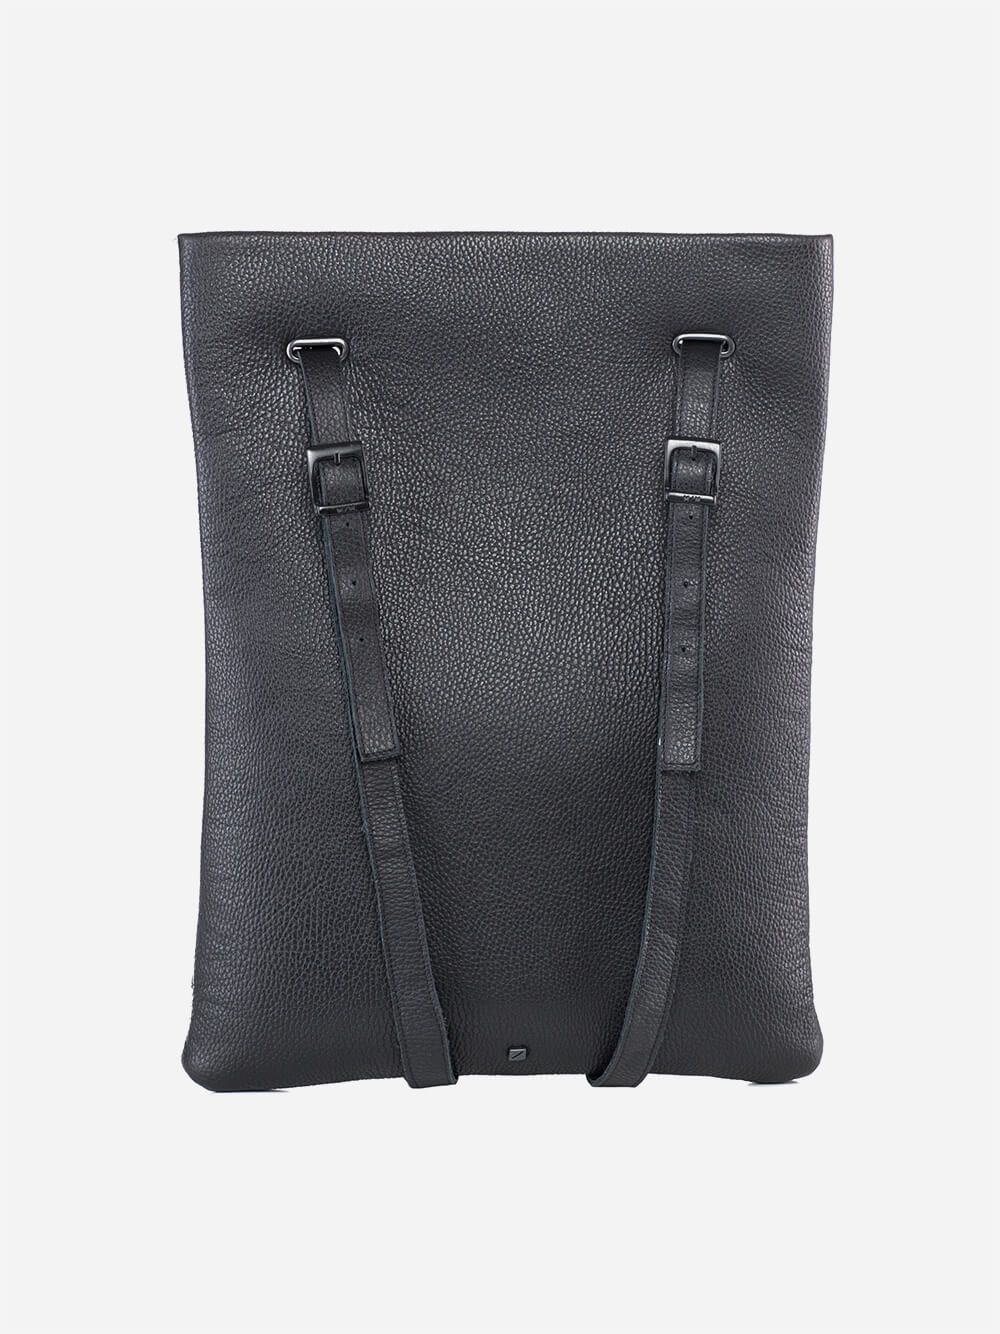 Grey and Black Backpack | Maria Maleta